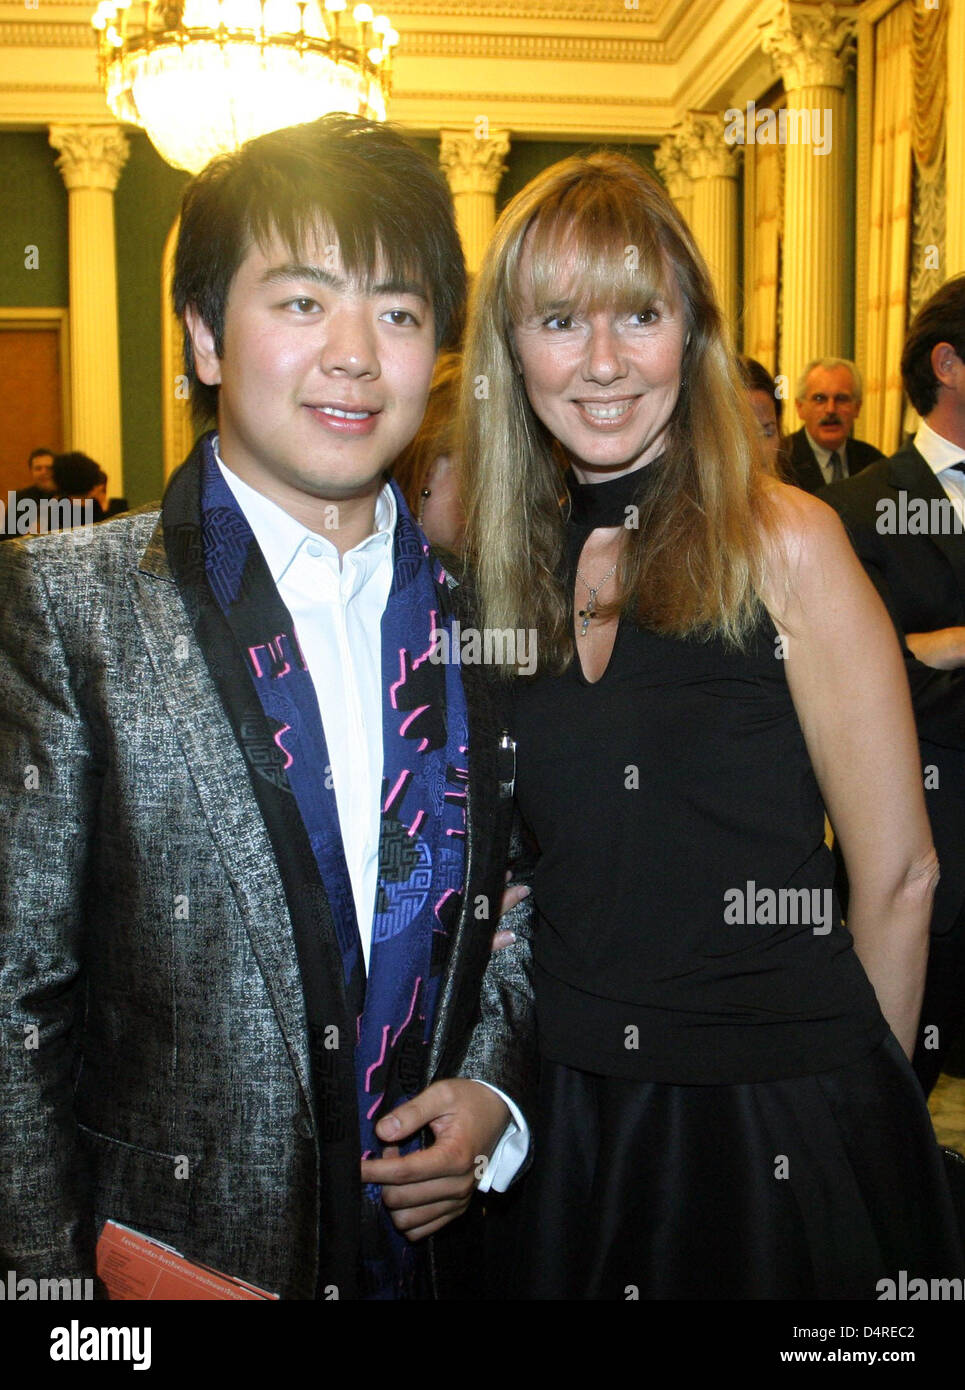 Maria Kotenev (R), épouse de l'Ambassadeur de Russie à Berlin Vladimir  Kotenev, et pianiste chinois Lang Lang Lang Lang chat avant l'exécution  dans l'ambassade de Russie à Berlin, Allemagne, 10 octobre 2009.